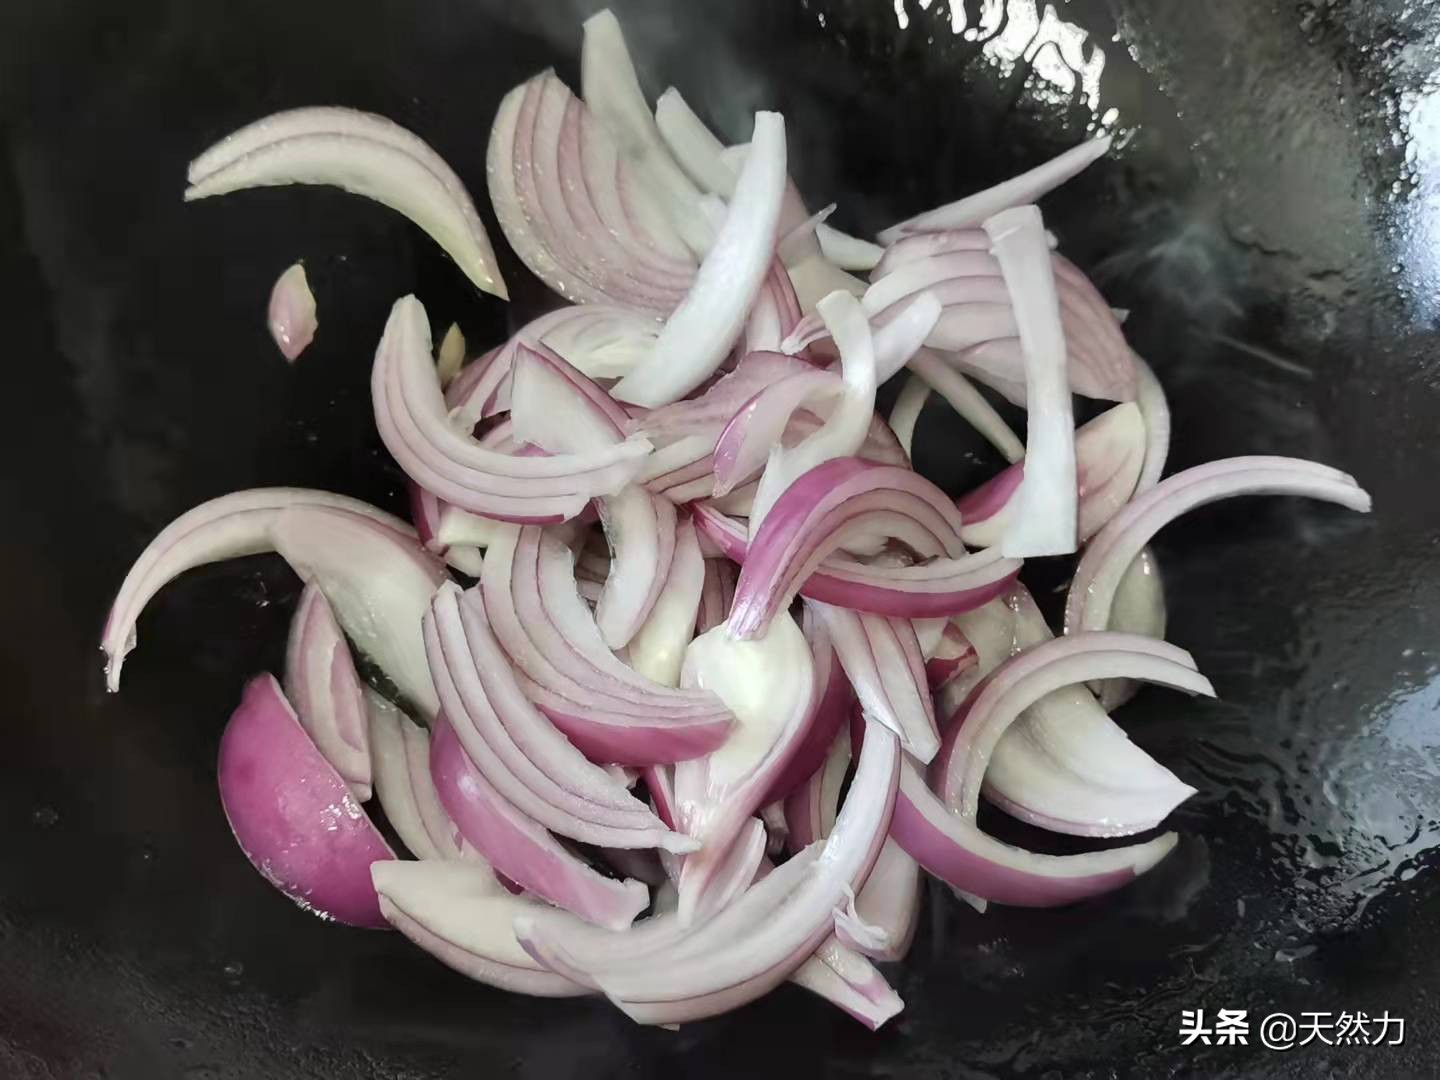 酒店的干锅花菜为什么那么好吃，那是有原因的，方法和技巧很重要